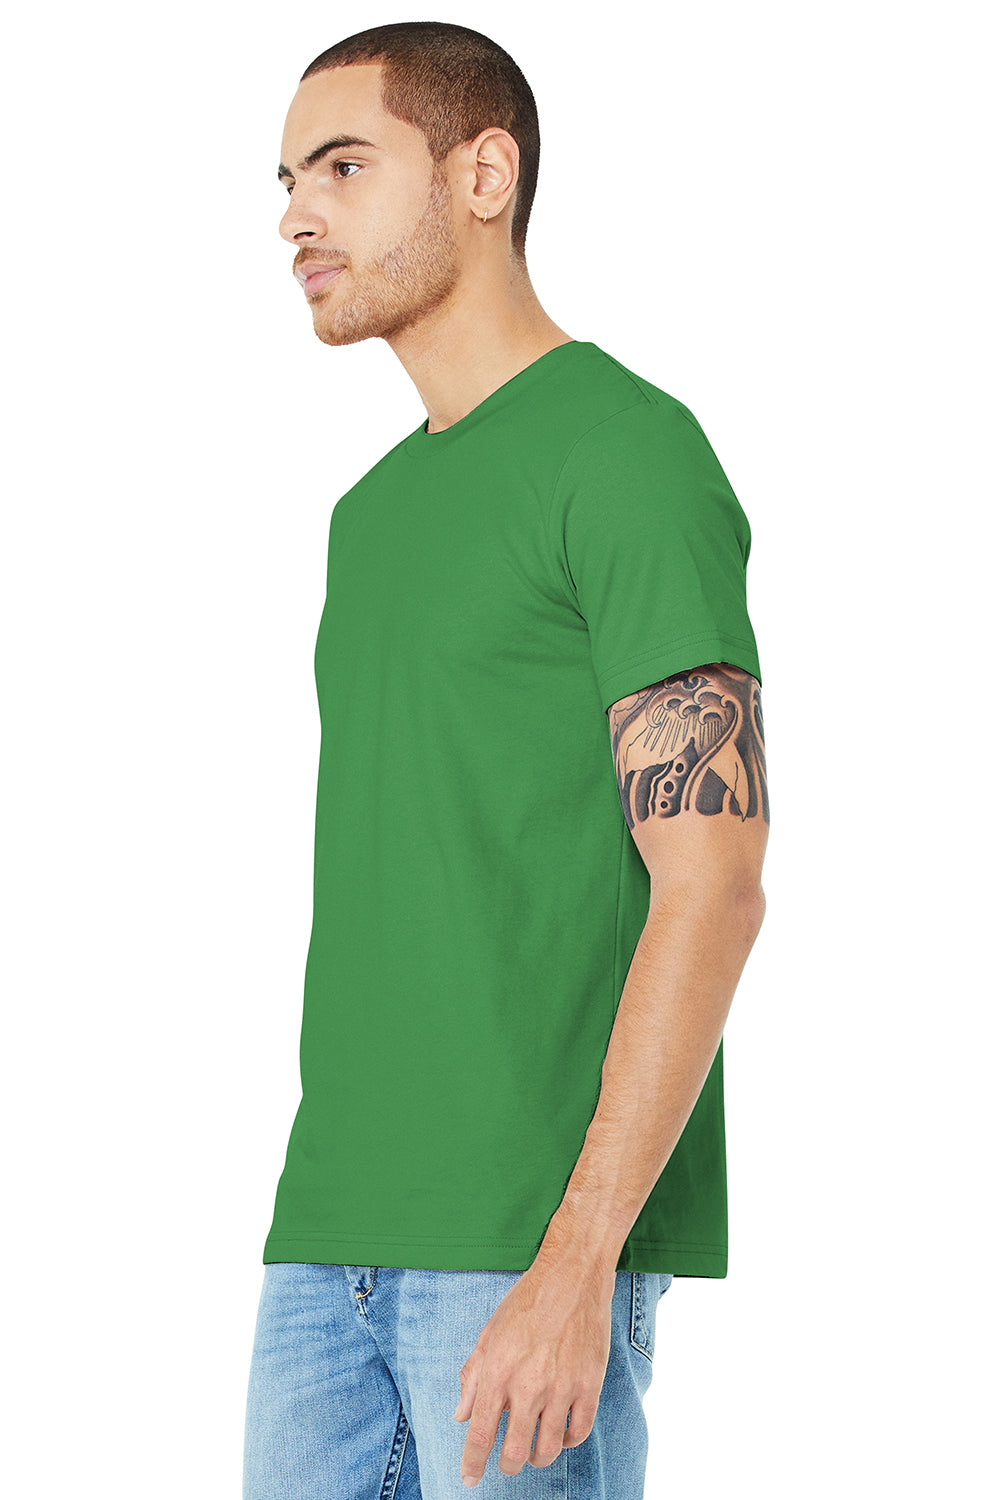 Bella + Canvas BC3001/3001C Mens Jersey Short Sleeve Crewneck T-Shirt Leaf Green Model 3Q